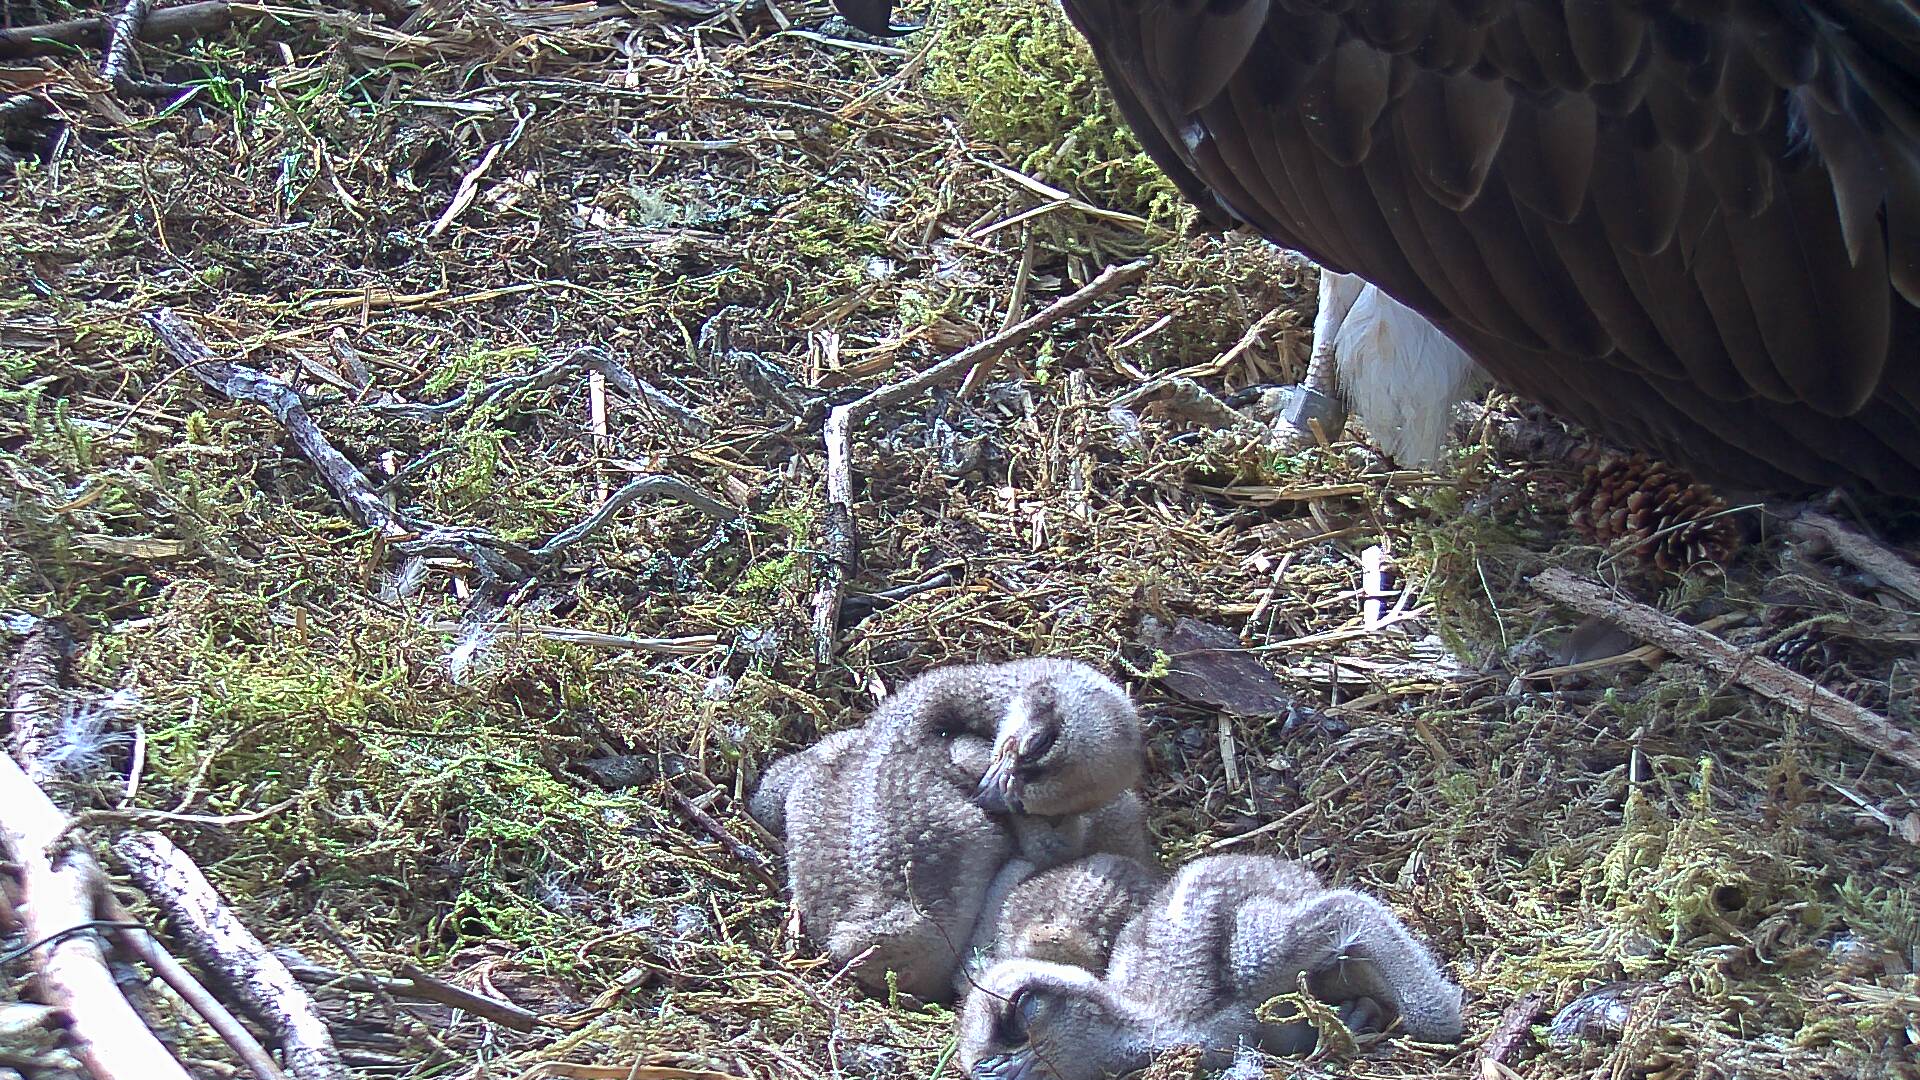 Osprey chicks sleeping in nest